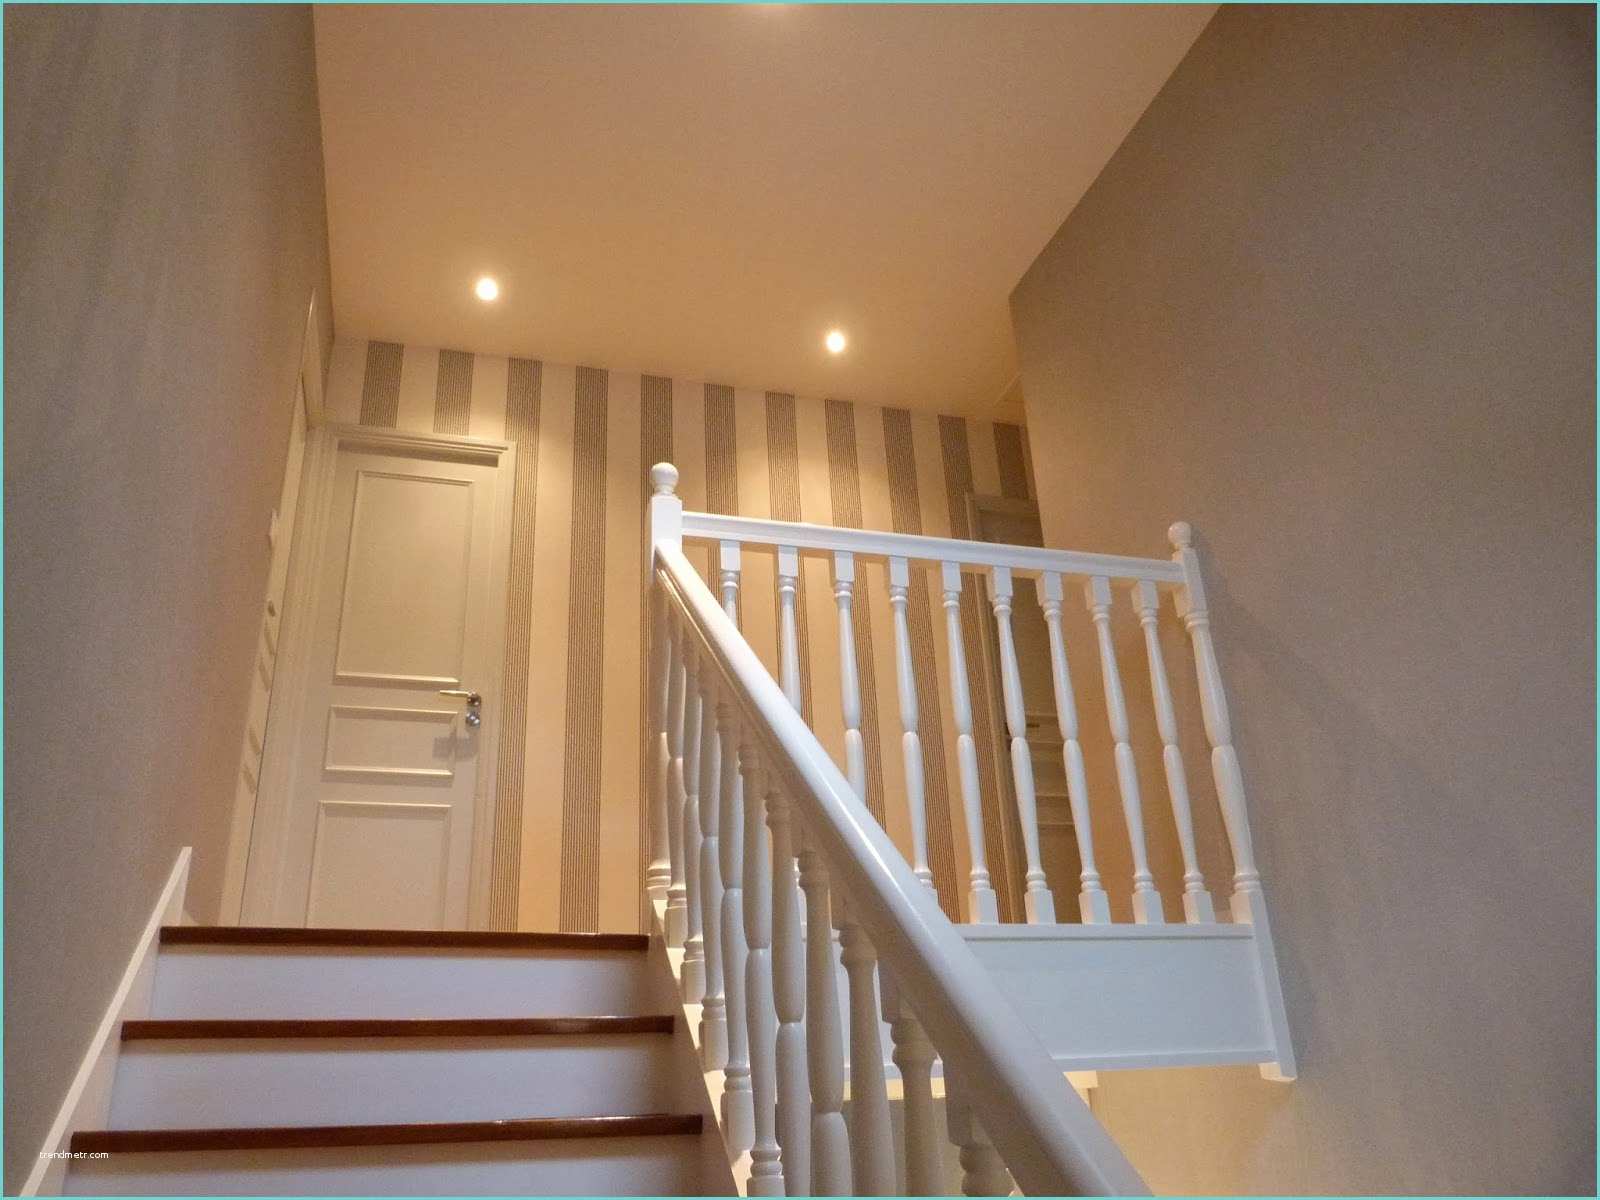 escalier peint en gris et blanc 1 anthracite d233co r233novation descalier